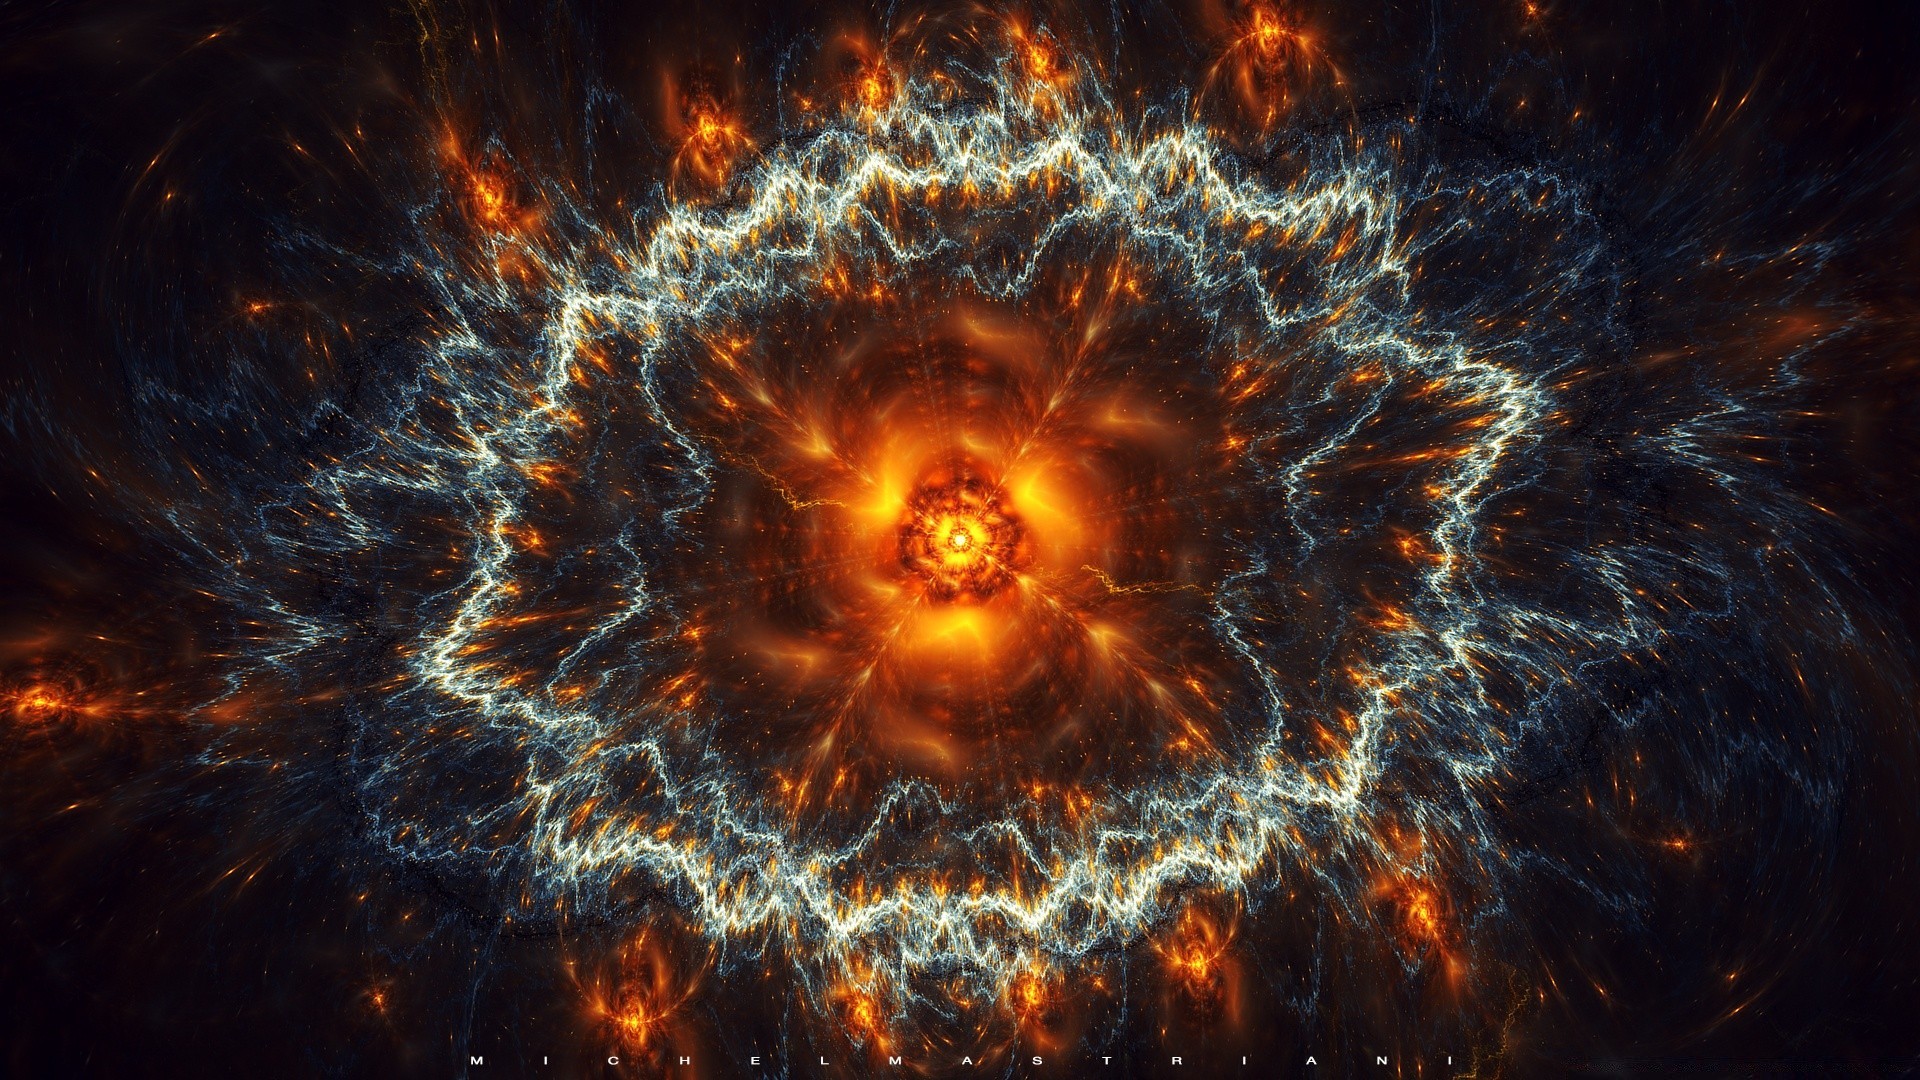 космос пламя астрономия свет аннотация фантазия энергии наука горячая тепло взрыв плазмы рабочего стола футуристический дым текстура галактика обои яркий люминесценция